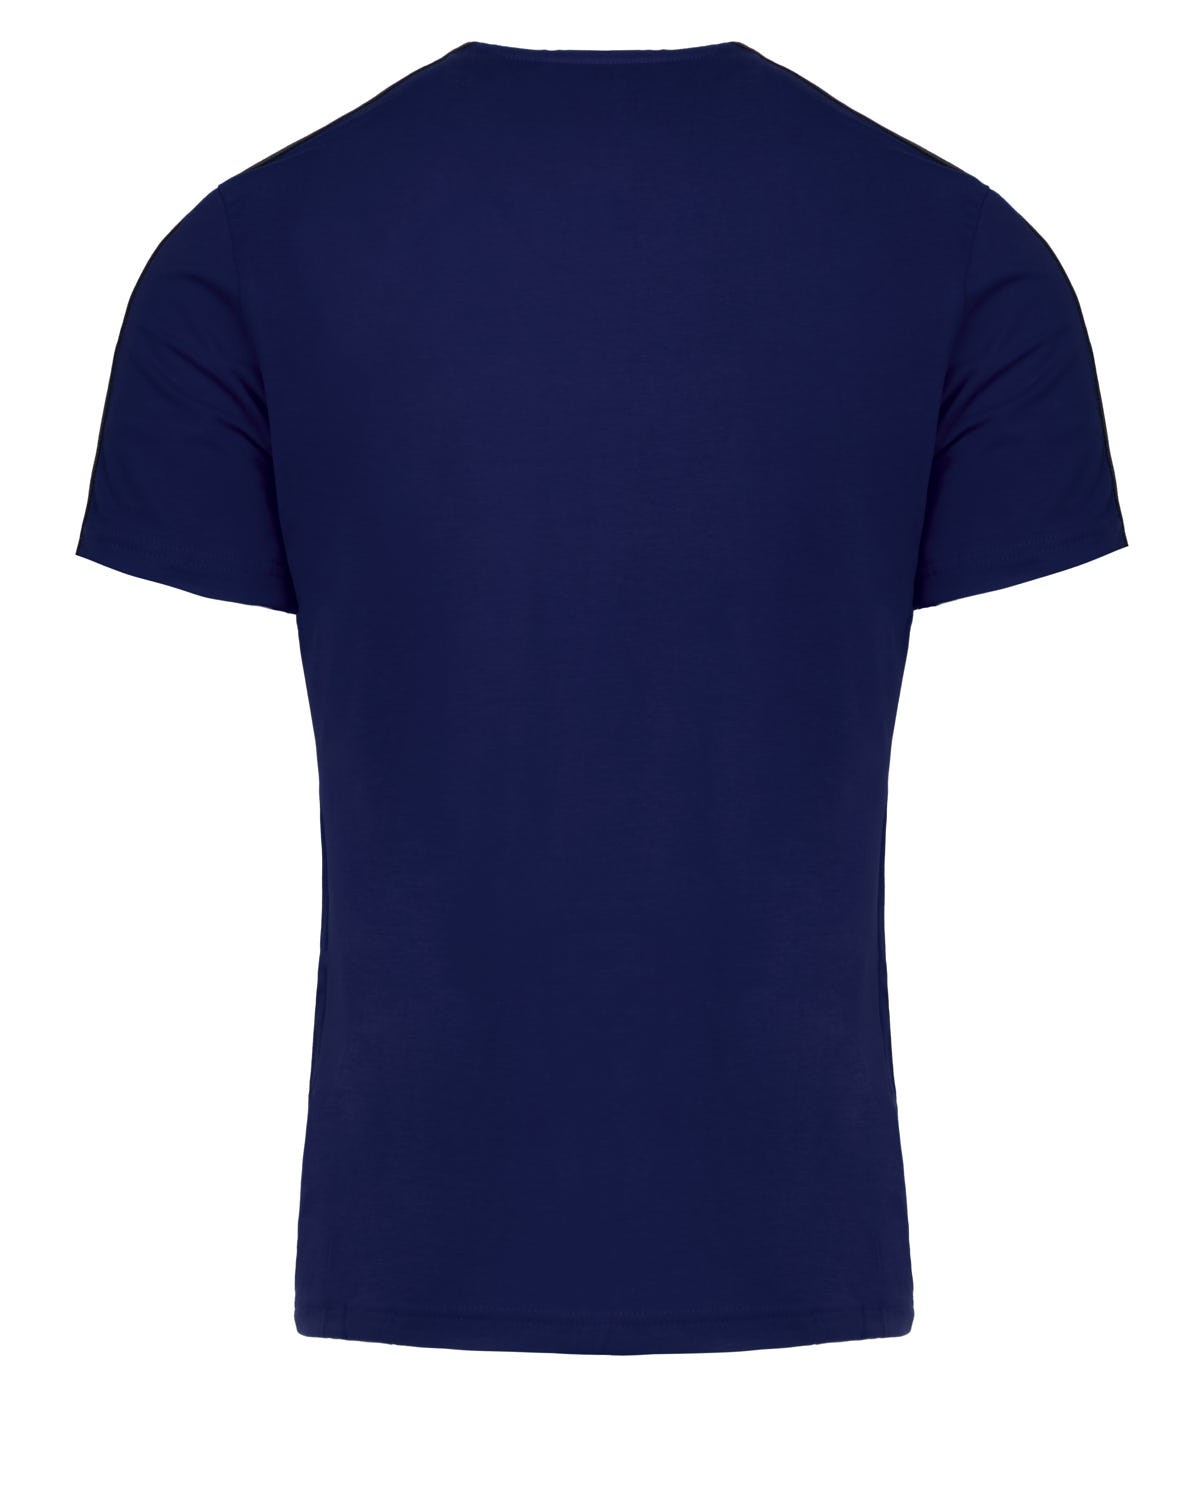 T-Shirt B&W™ Edition Dark Blue